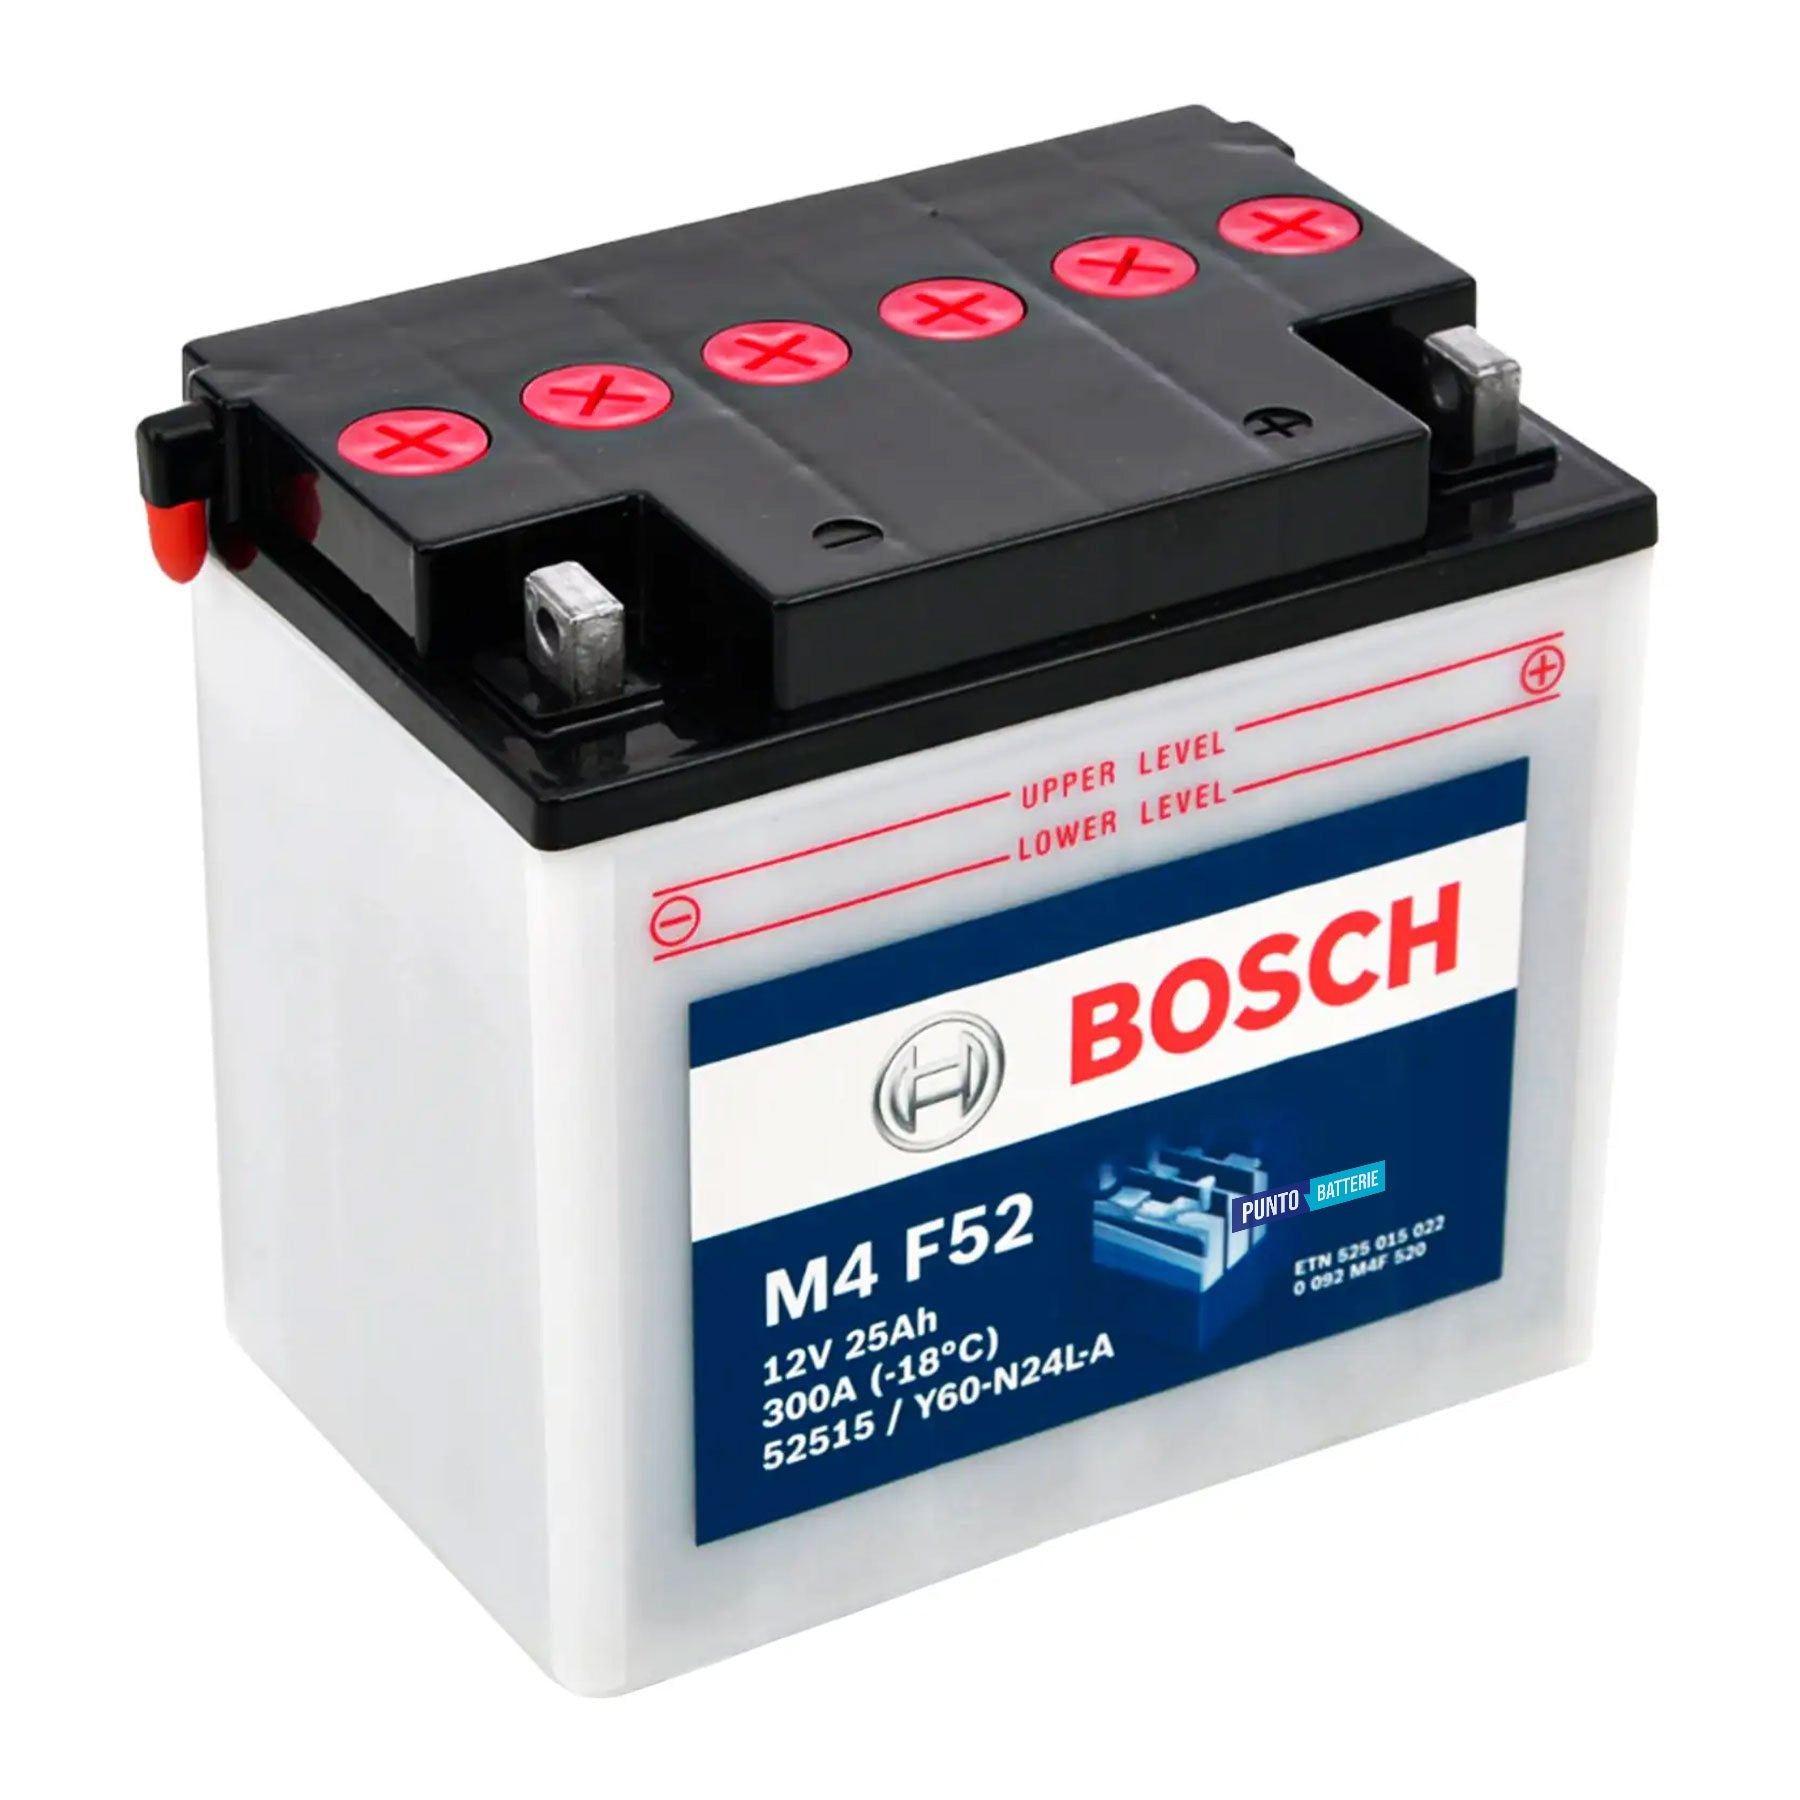 Batteria originale Bosch M4 M4F52, dimensioni 184 x 124 x 170, polo positivo a destra, 12 volt, 25 amperora, 300 ampere. Batteria per moto, scooter e powersport.